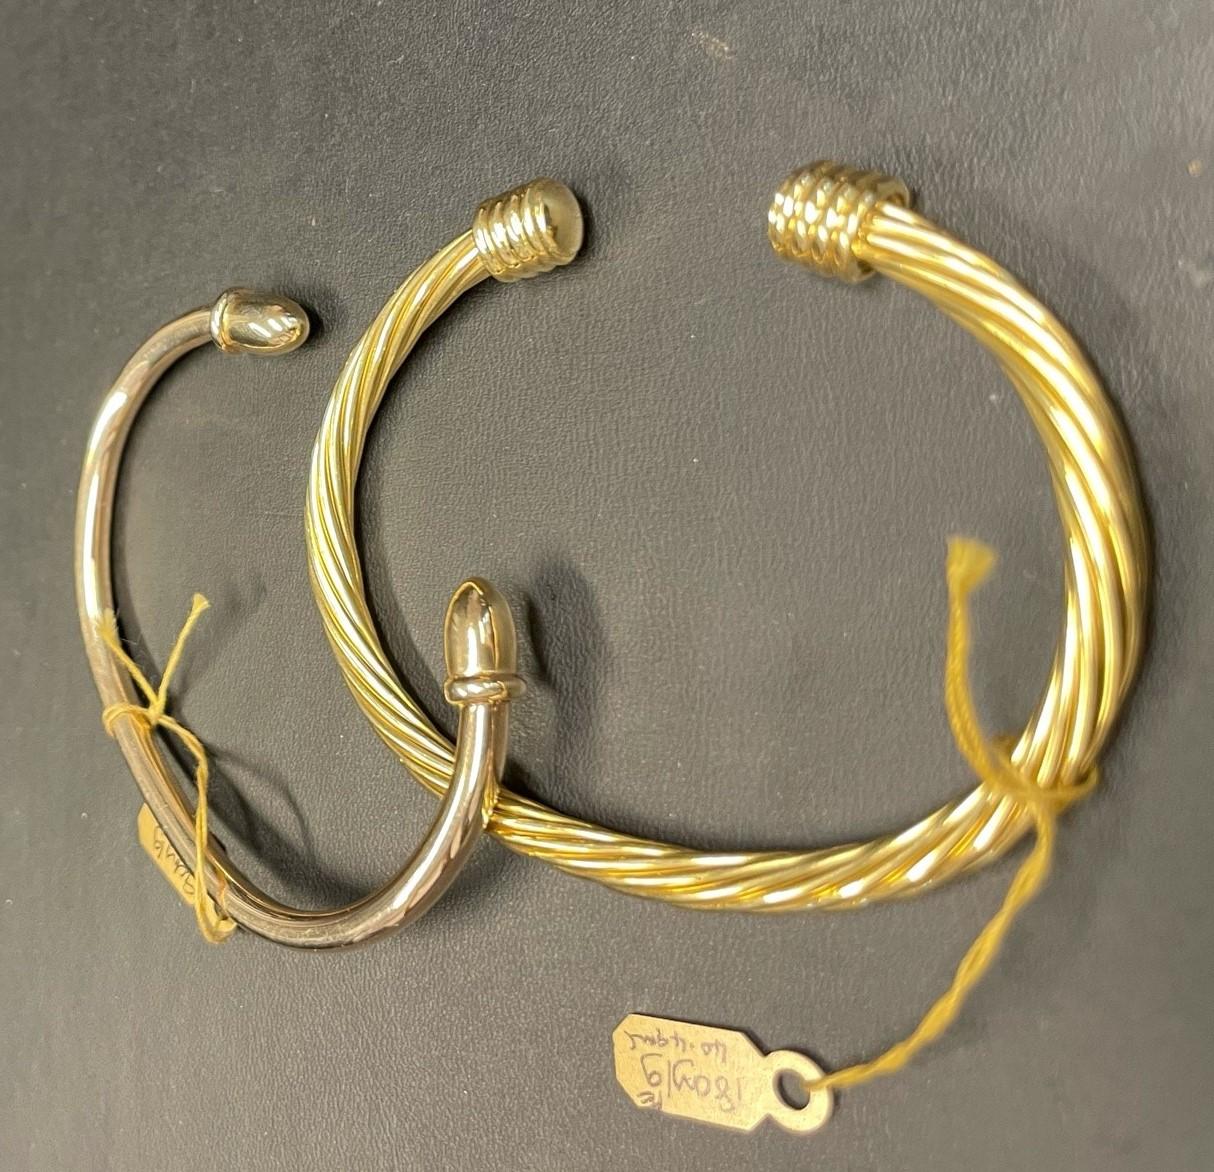 golden retriever bracelet